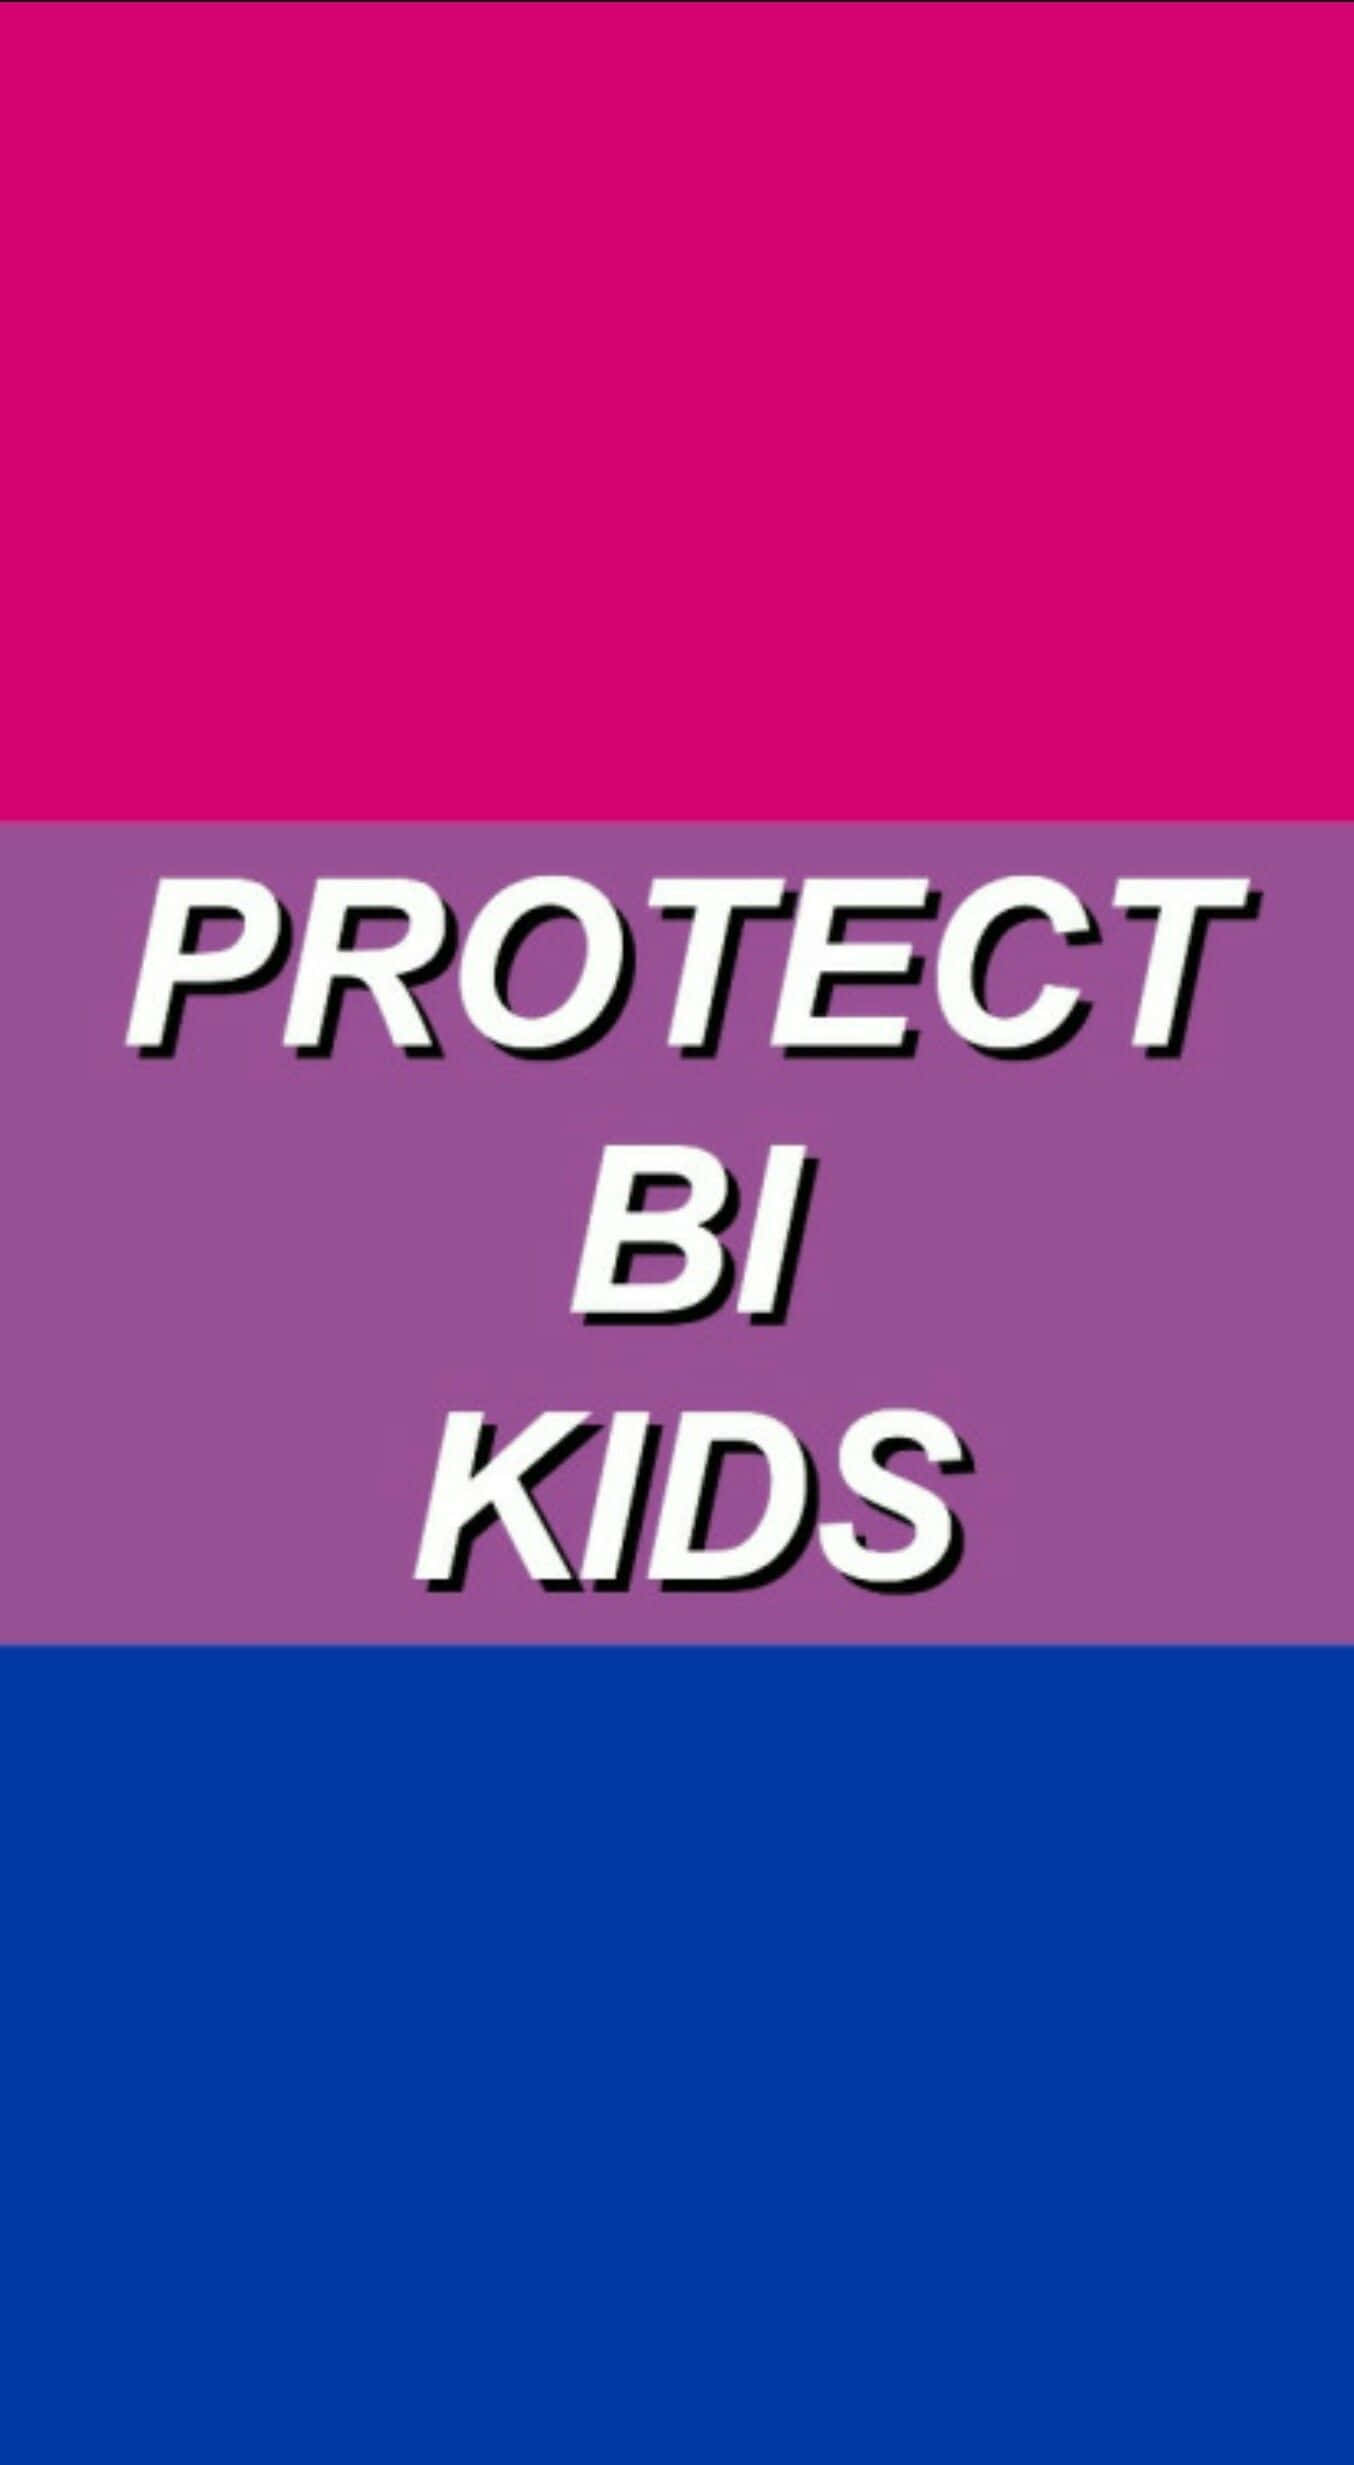 Beskytbiseksuelle Børn - Et Lyserødt Og Lilla Flag Med Ordene Beskyt Biseksuelle Børn